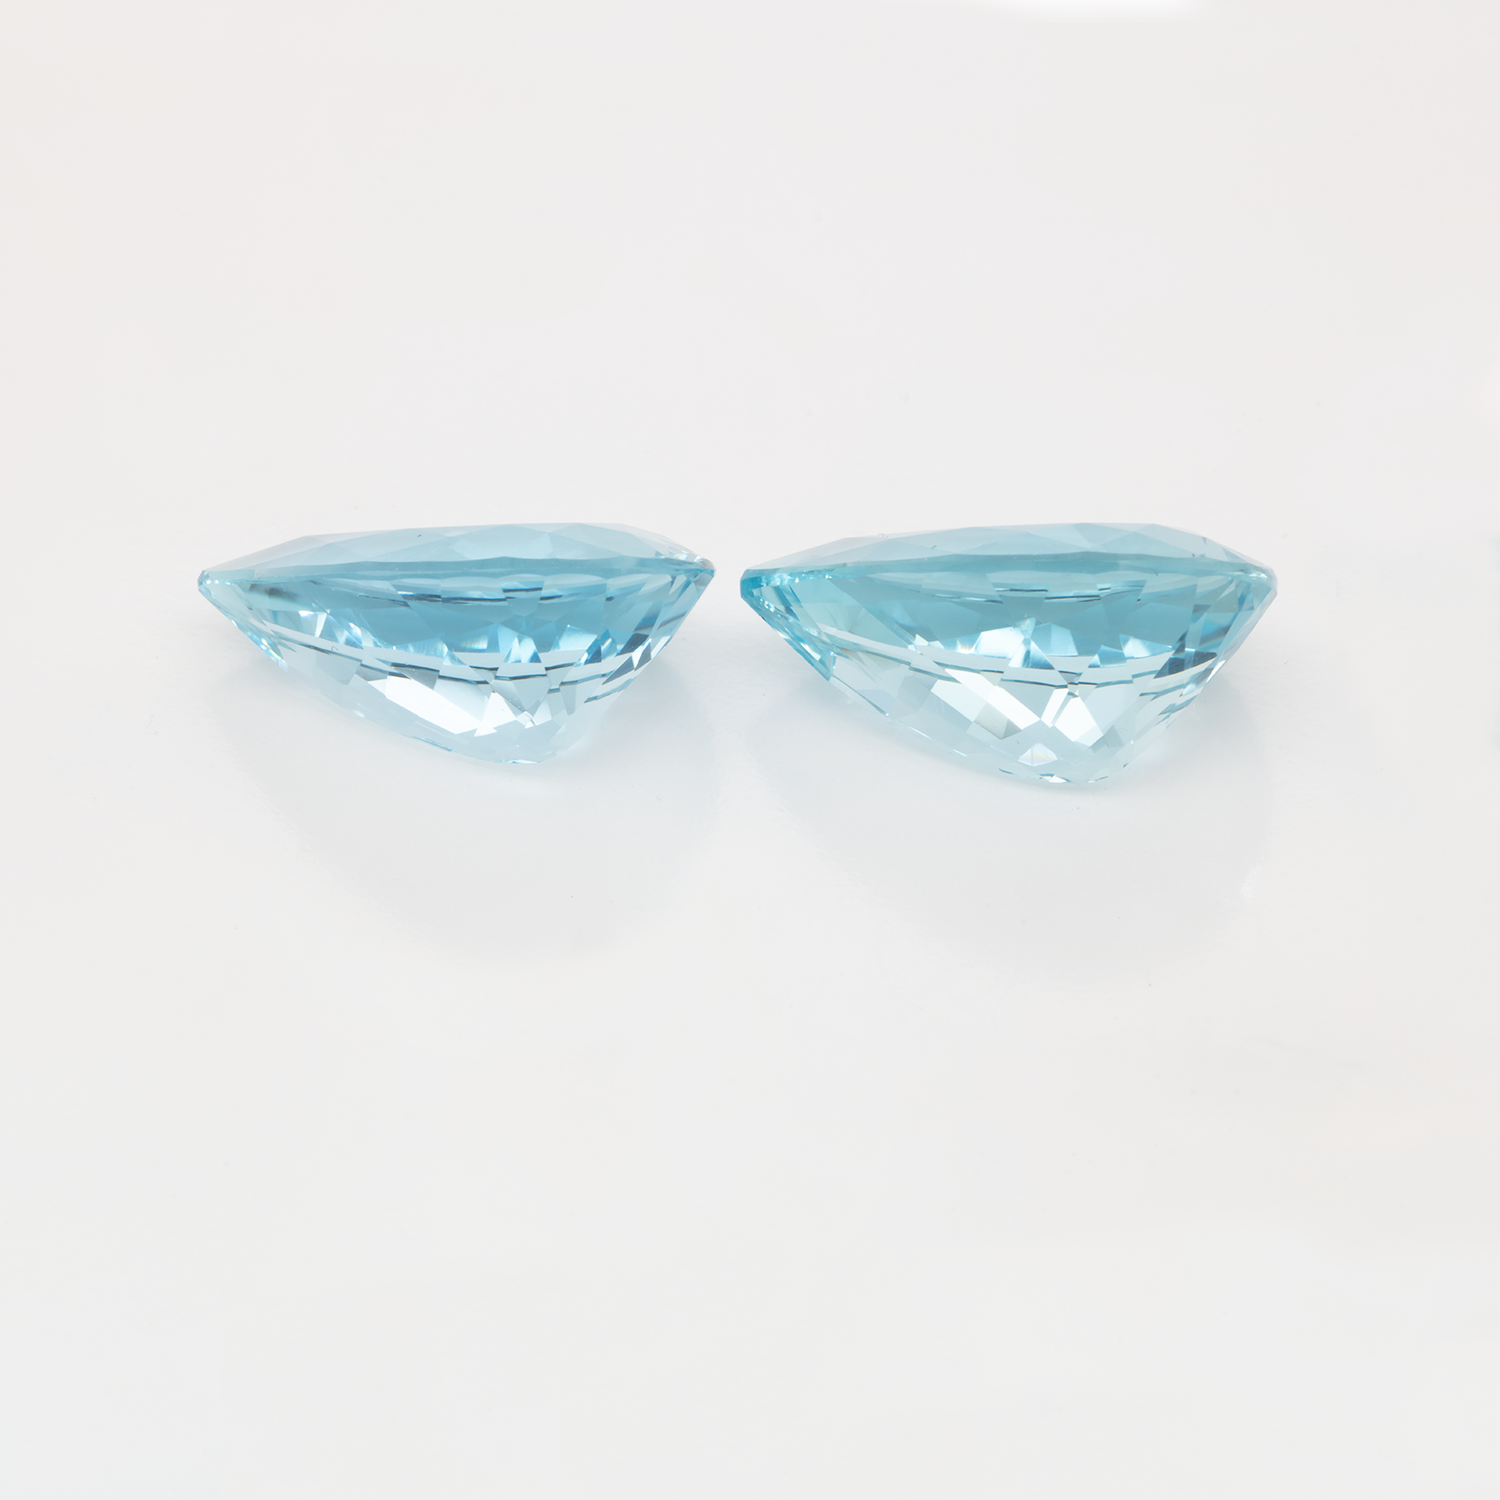 Aquamarin Paar - AAA, blau, birnform, 16x11 mm, 11.69 cts, Nr. A99038